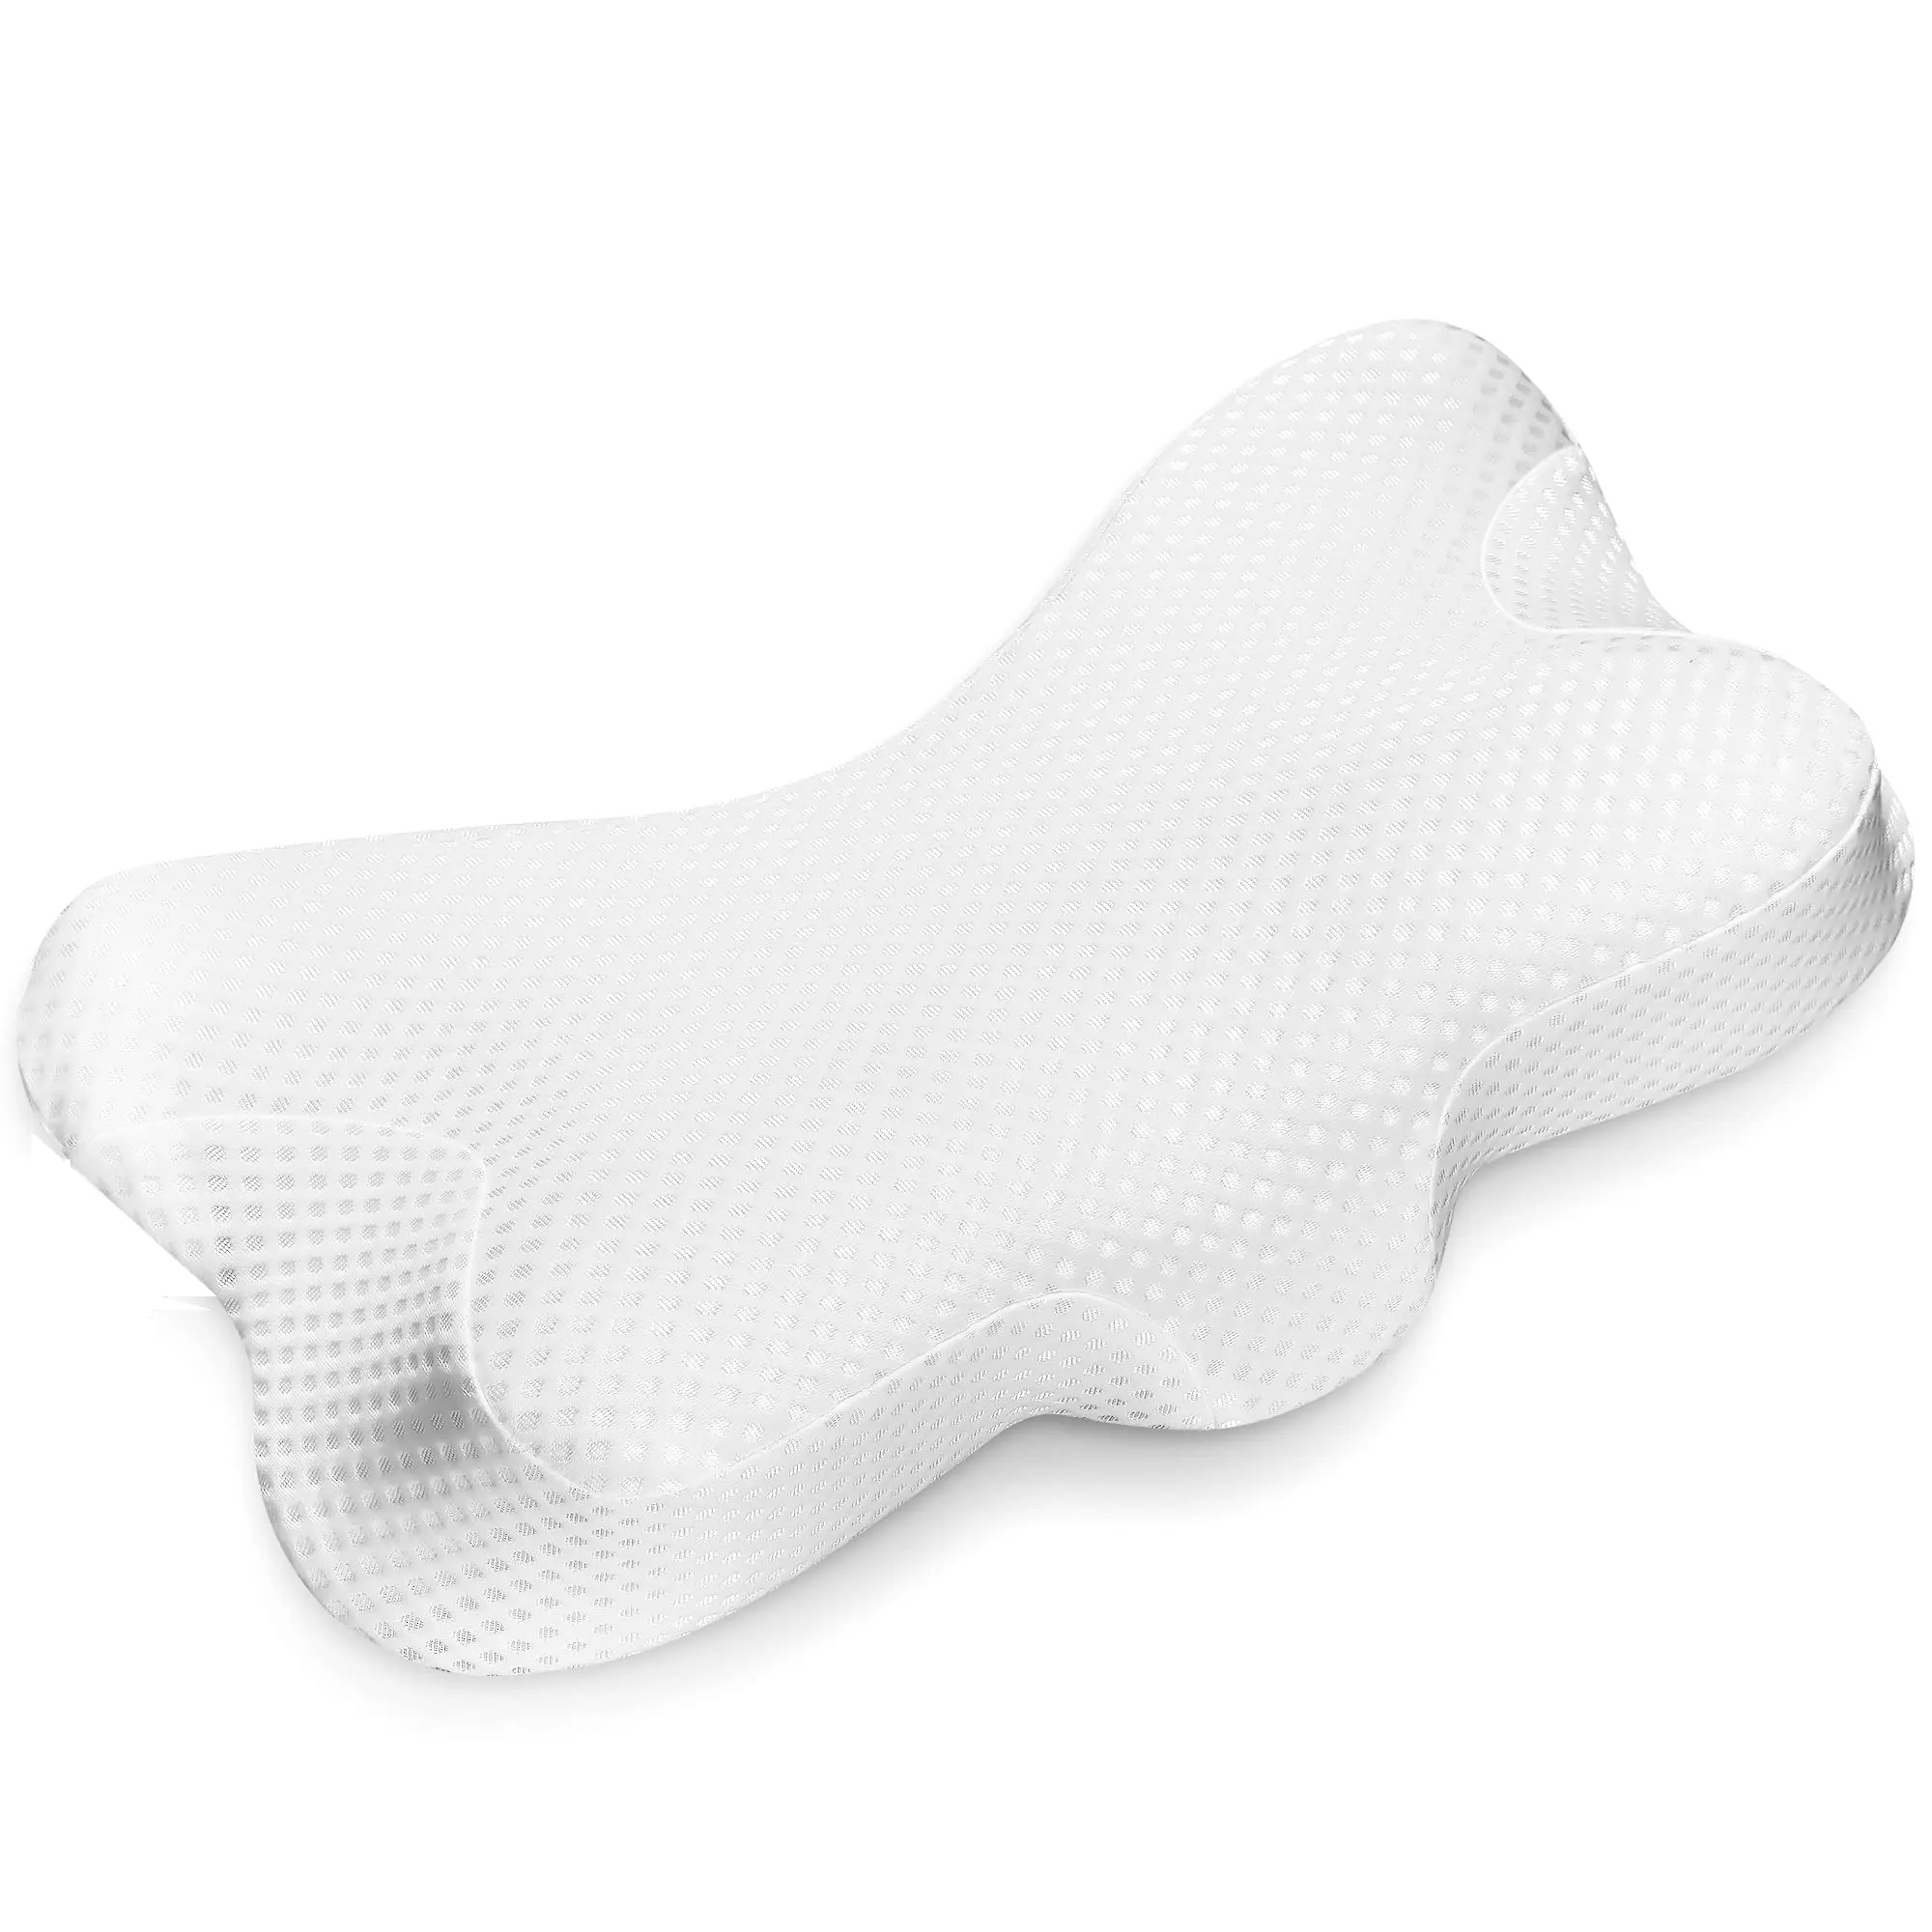 2022年のベストセラー人間工学に基づいた首のサポート洗えるジッパー式ソフトカバー付きのすべての睡眠姿勢用の頸部ベッド枕 //